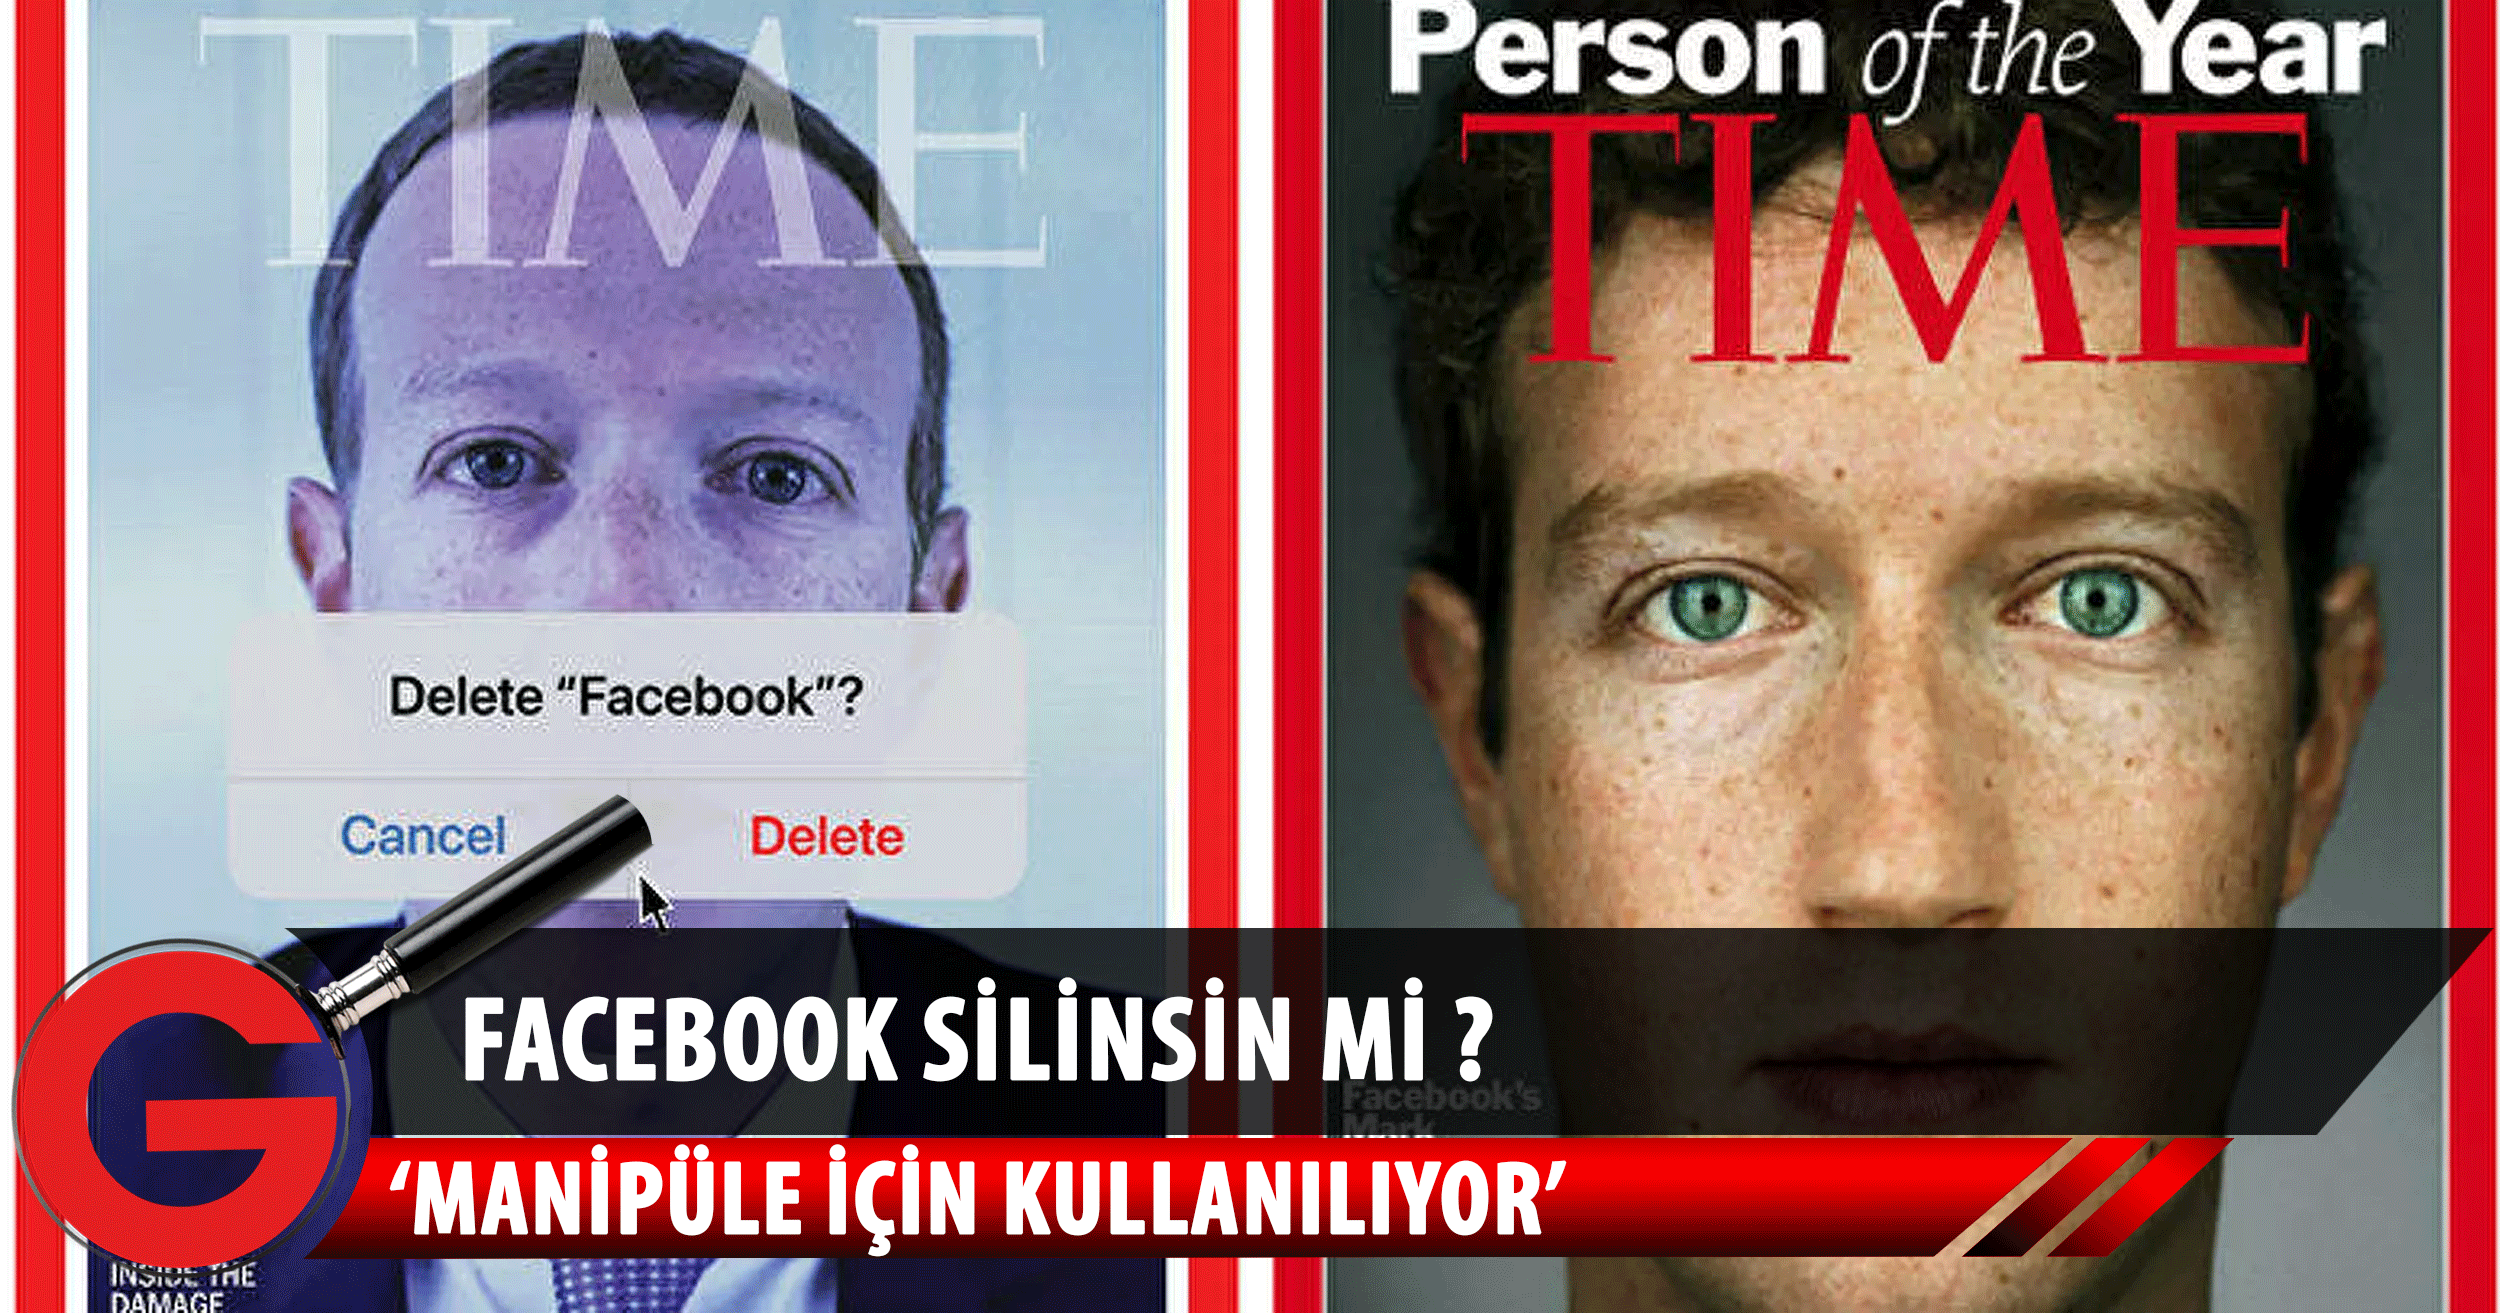 Zuckerberg, yüzünün üzerinde 'Facebook silinsin mi?' sorusuyla 11 yıl sonra TIME kapağında